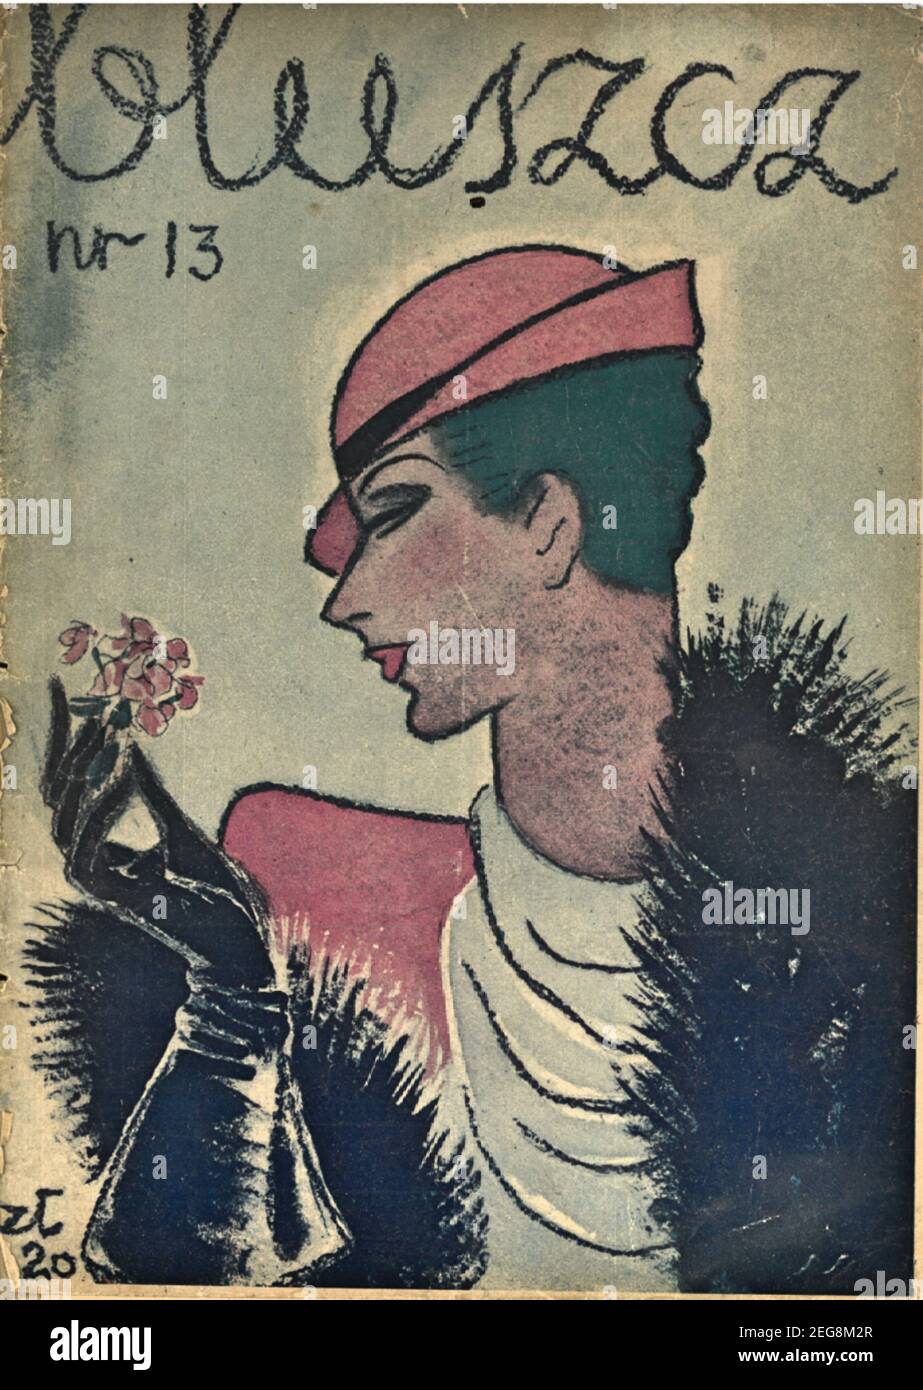 Okładka przedwojennego magazynu dla kobiet Bluszcz 1933, lata 30te, portada de la revista polaca de preguerra para mujeres Bluszcz estilo art decó Foto de stock